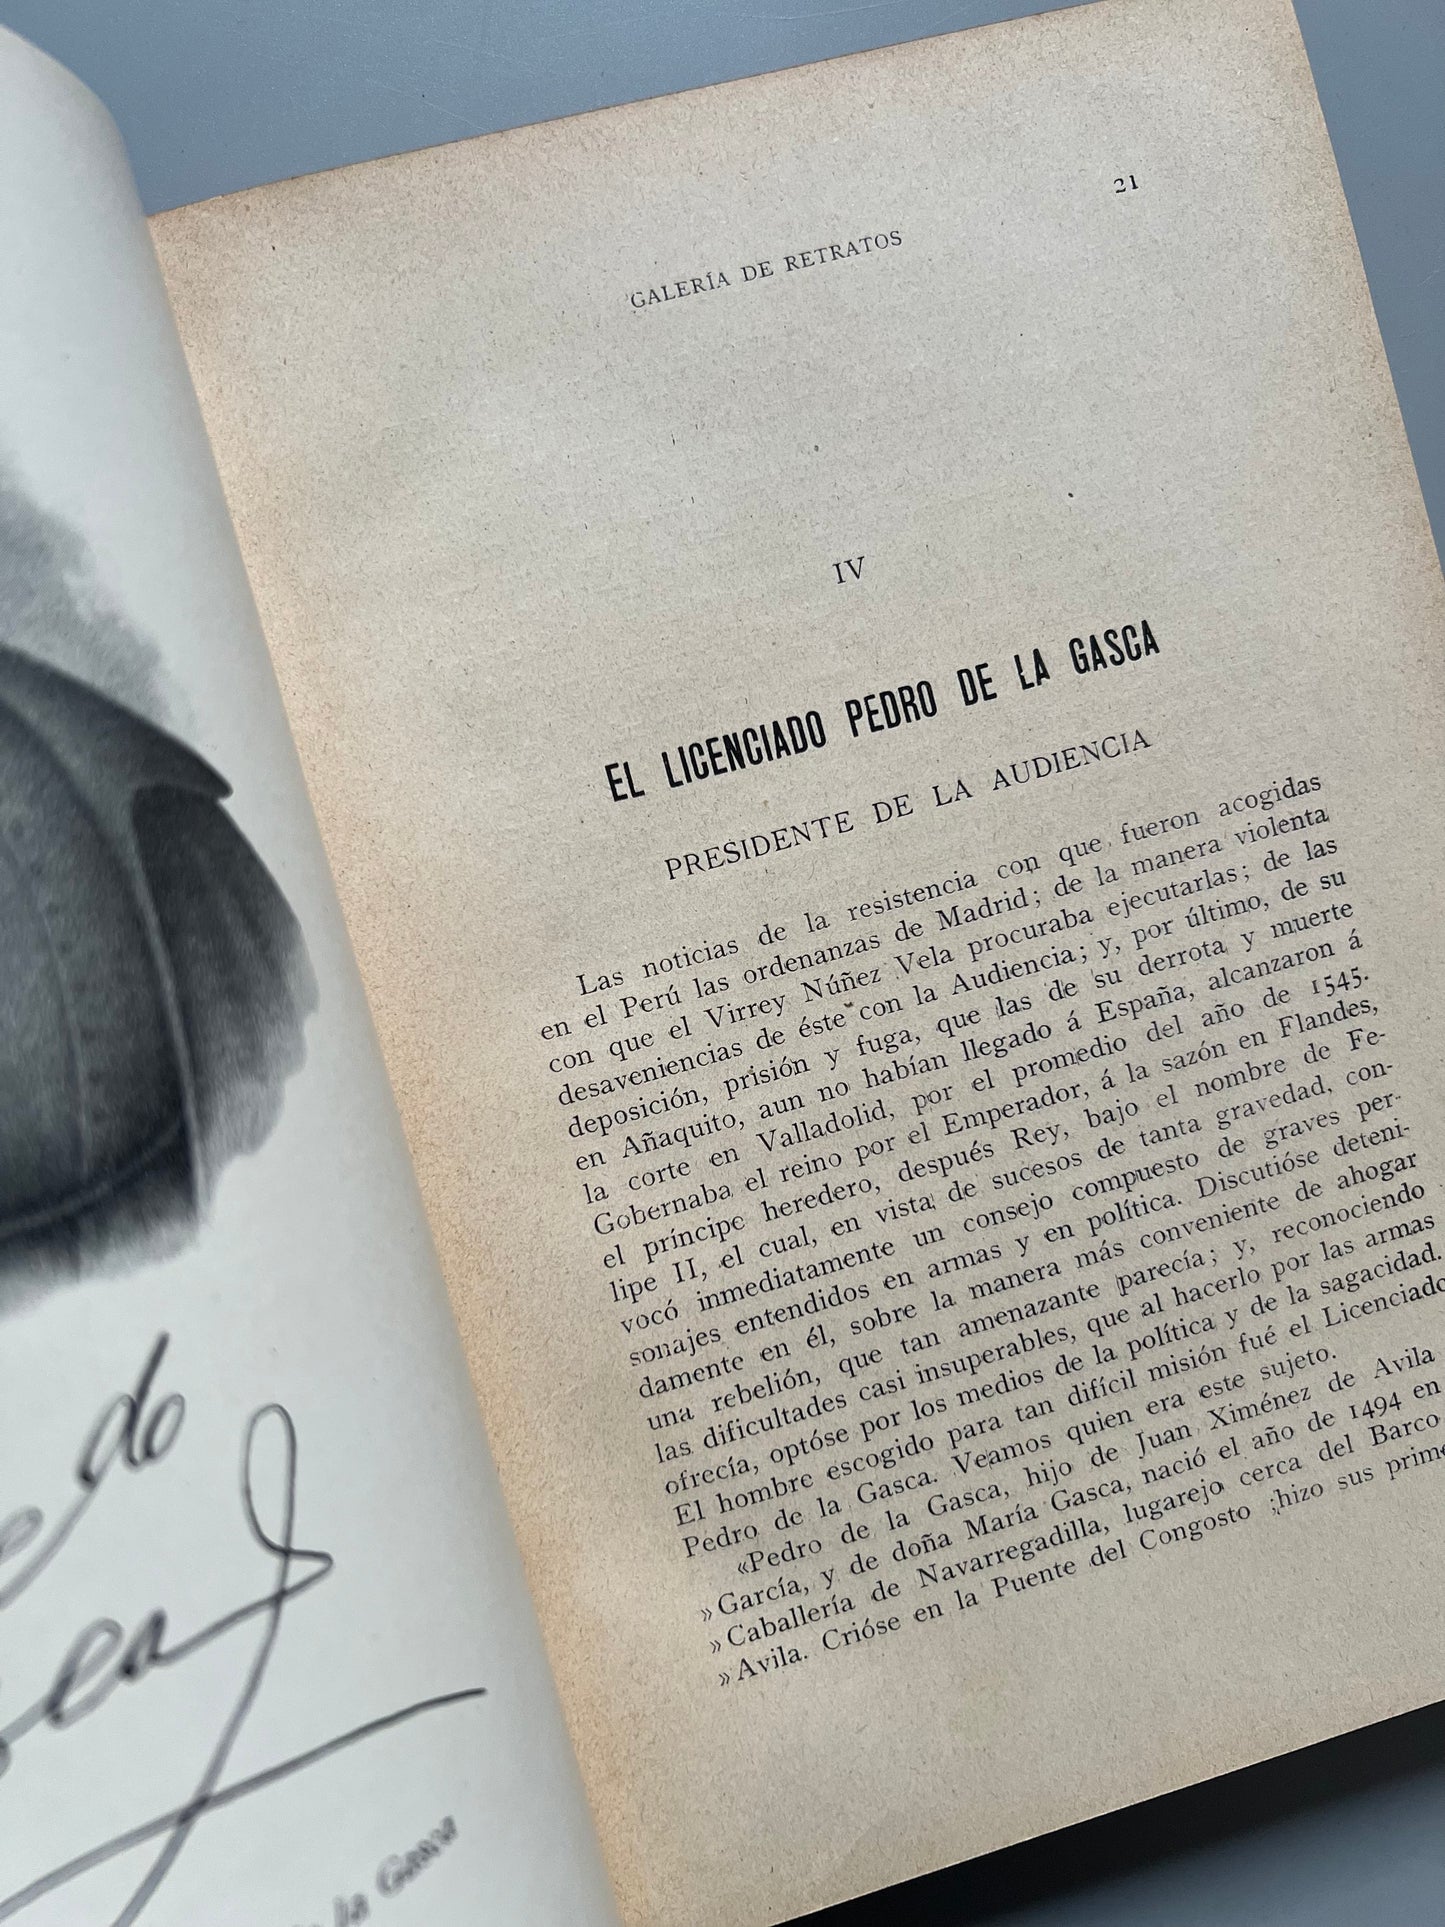 Gobernadores y virreyes del Perú (1532-1824), J. A. de Lavalle - Casa Editorial Maucci, 1909